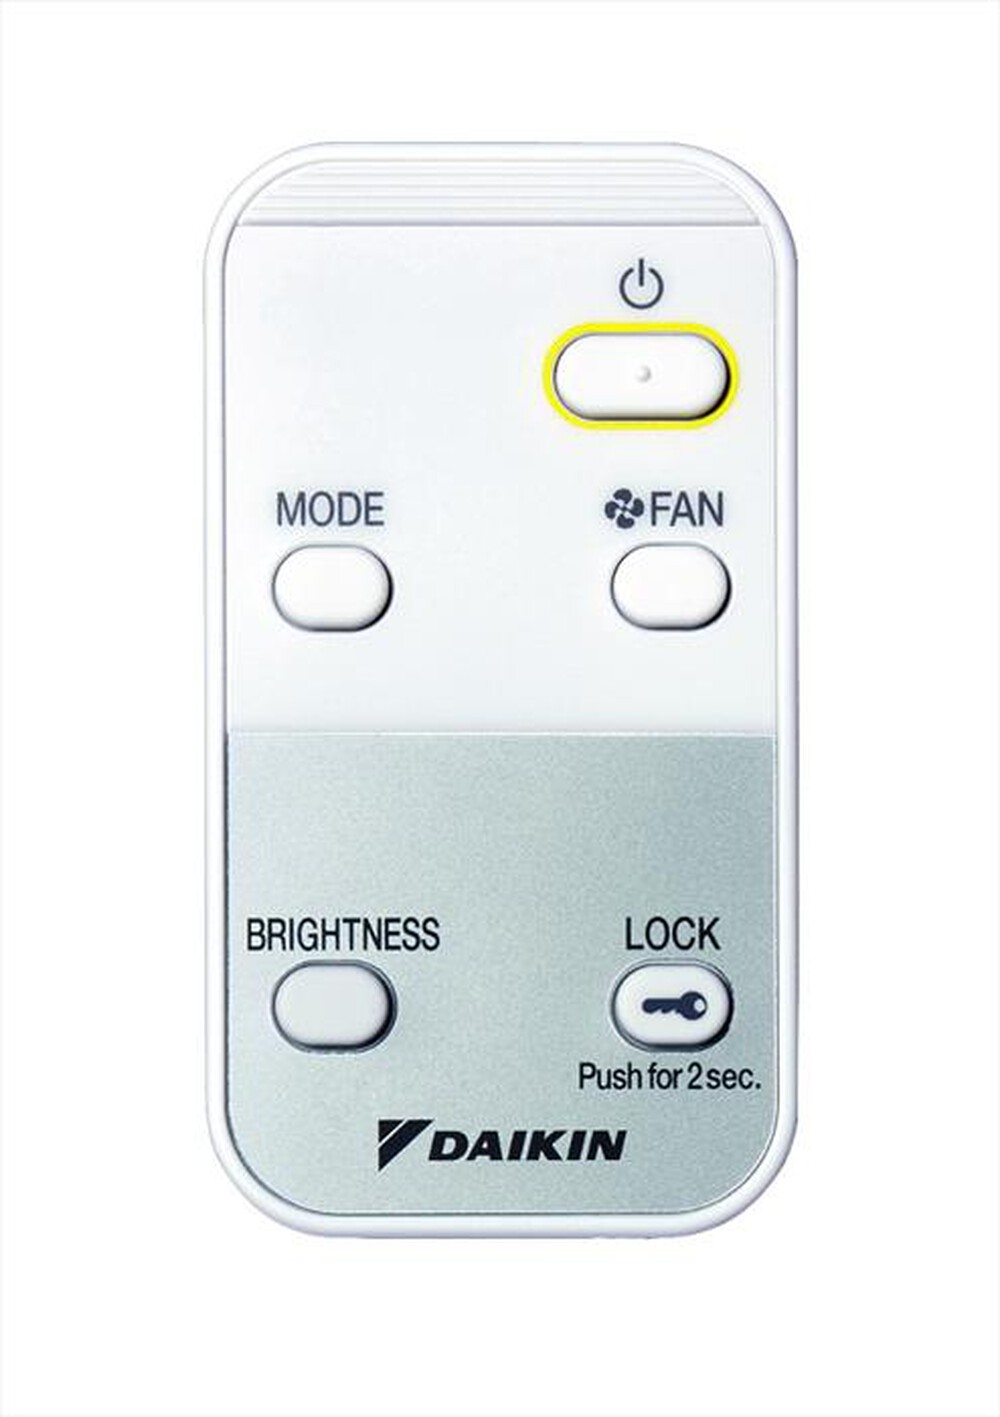 "DAIKIN - MC55W - Bianco"